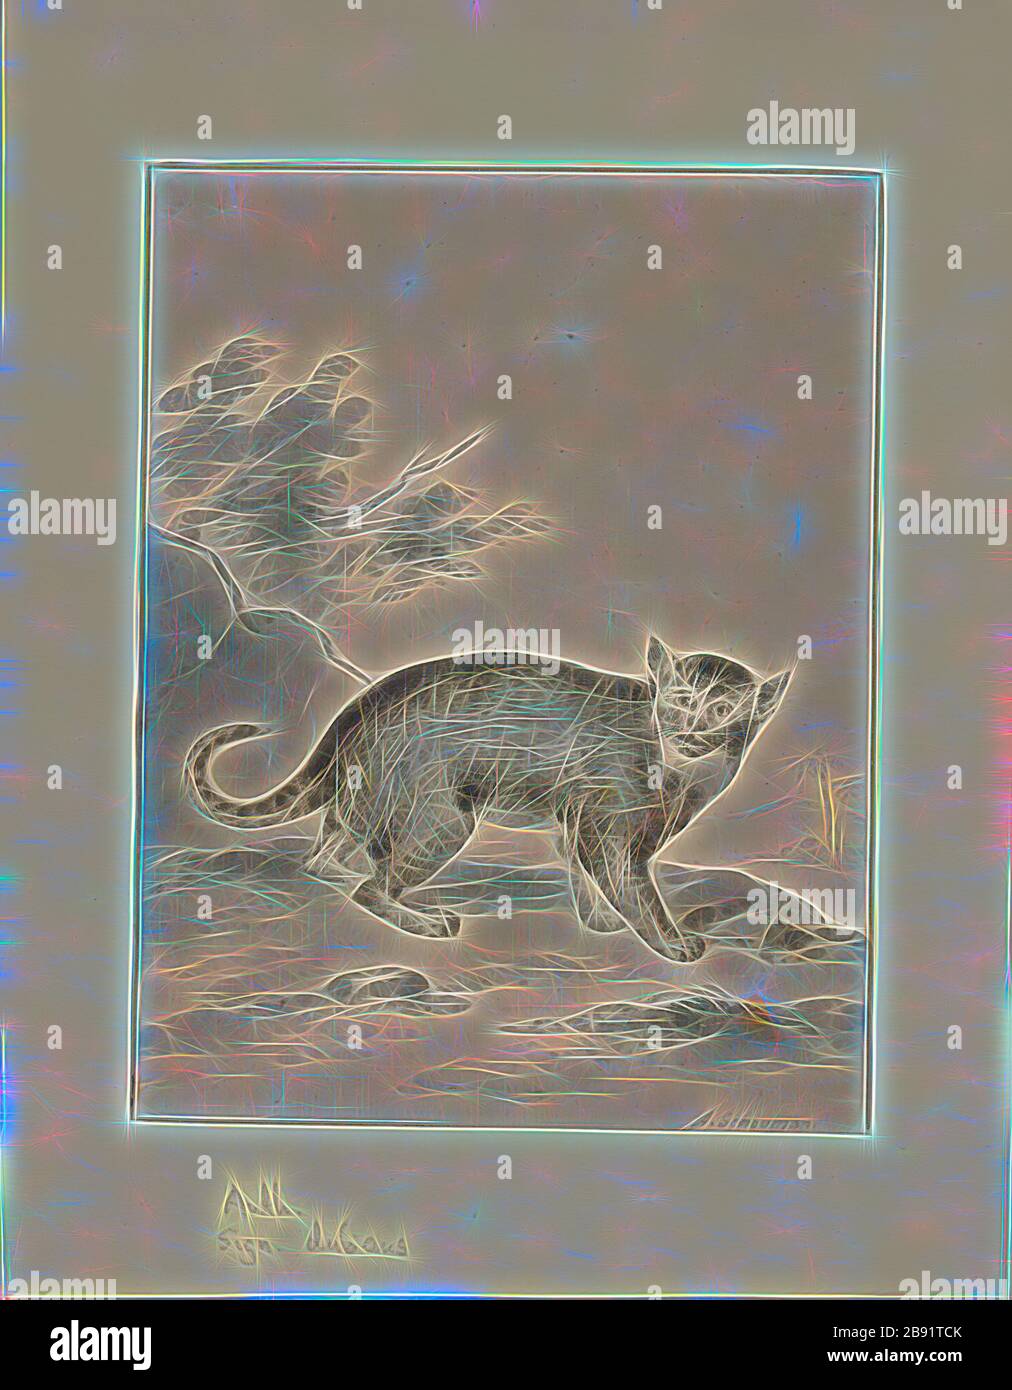 Prionailurus bengalensis, Print, die Leopardenkatze (Prionailurus bengalensis) ist eine kleine Wildkatze, die im kontinentalen Süd-, Südost- und Ostasien beheimatet ist. Seit 2002 wird sie auf der Roten Liste der Weltnaturschutzgebiete als am wenigsten betroffen geführt, da sie weit verbreitet ist, obwohl sie in Teilen ihres Sortiments von Lebensraumverlust und Jagd bedroht ist., 1710-1792, von Gibon neu vorgestellt, Design von warmem, fröhlichem Leuchten von Helligkeit und Lichtstrahlen. Klassische Kunst mit moderner Note neu erfunden. Fotografie, inspiriert vom Futurismus, die dynamische Energie moderner Technologie, Bewegung, Geschwindigkeit und Kultur revolutionieren. Stockfoto